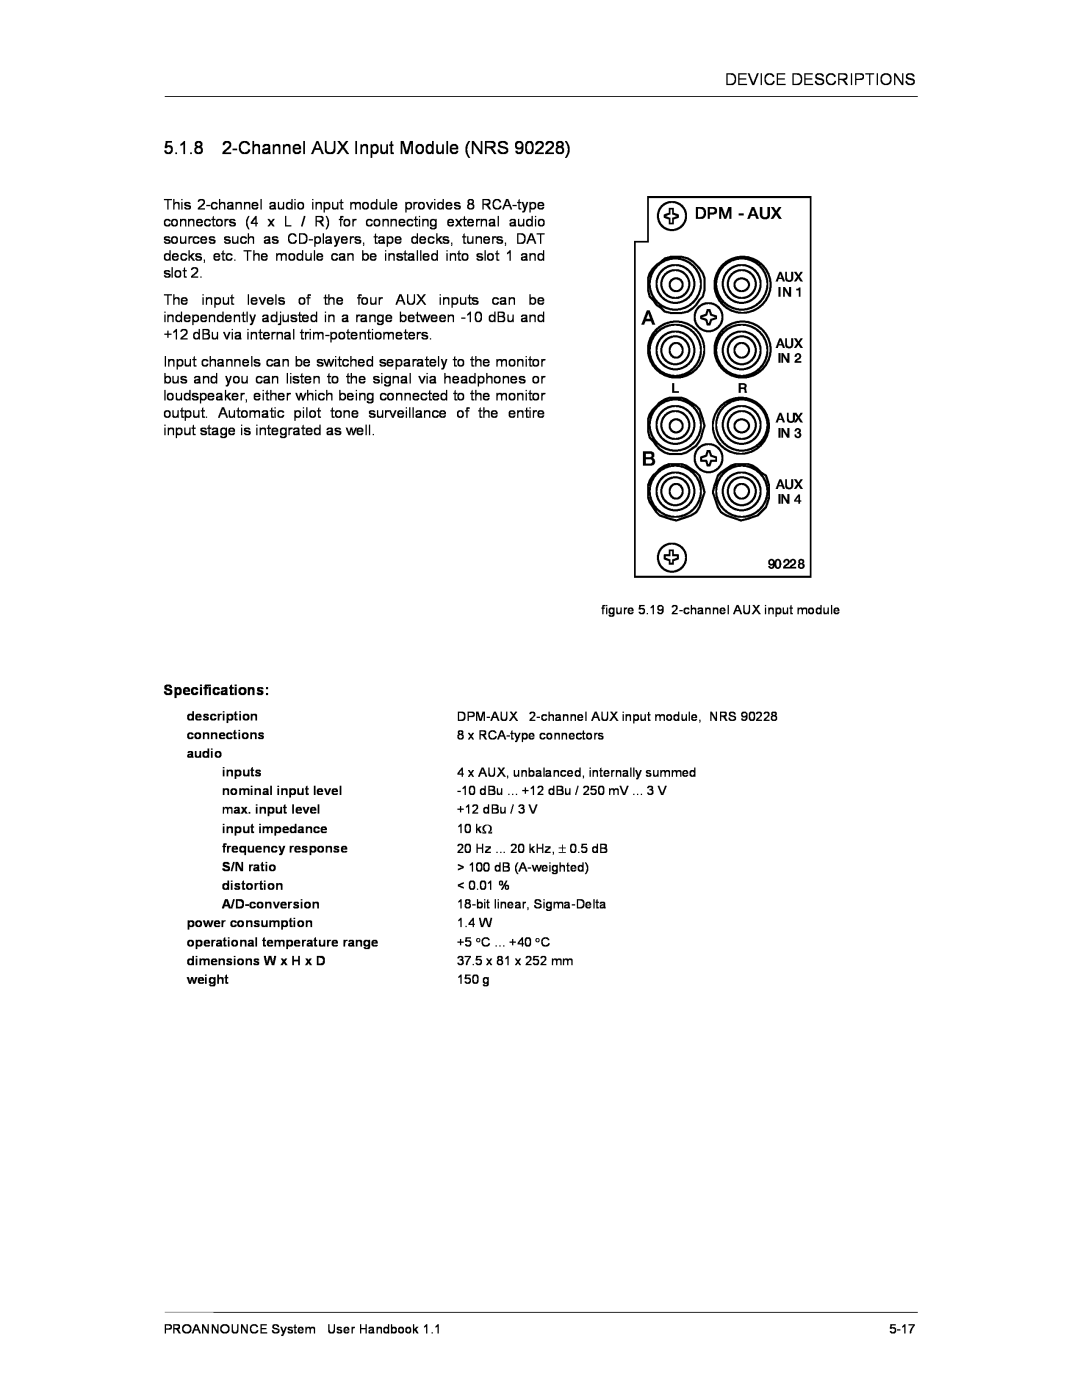 Dynacord DPM 4000 manual 5.1.8 2-ChannelAUX Input Module NRS, Dpm - Aux 